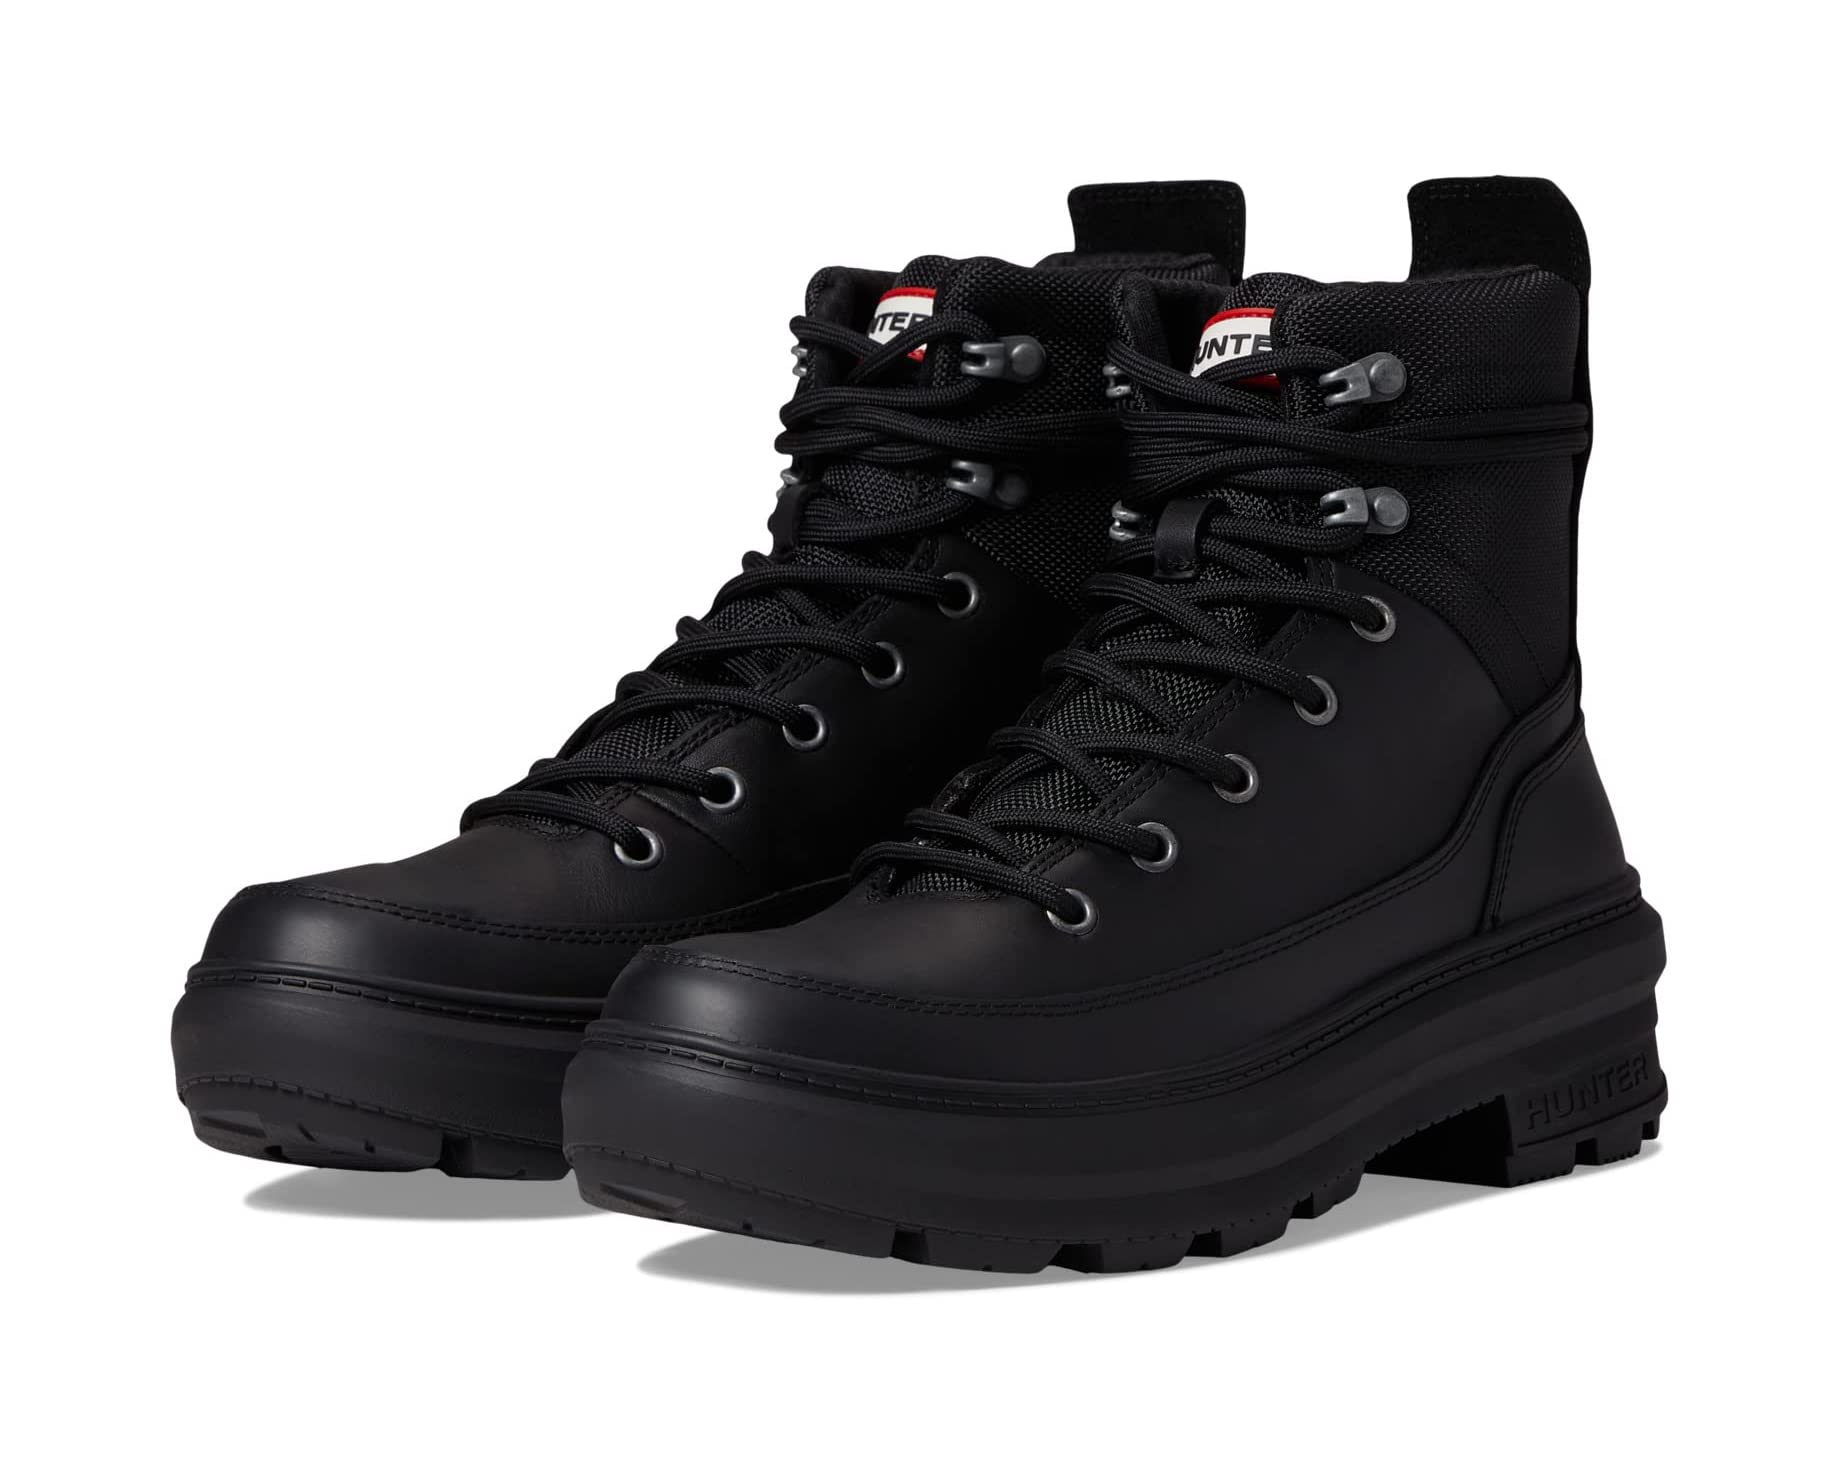 Ботинки Rebel Explorer Boot Hunter, черный – купить из-за границы черезсервис «CDEK.Shopping»